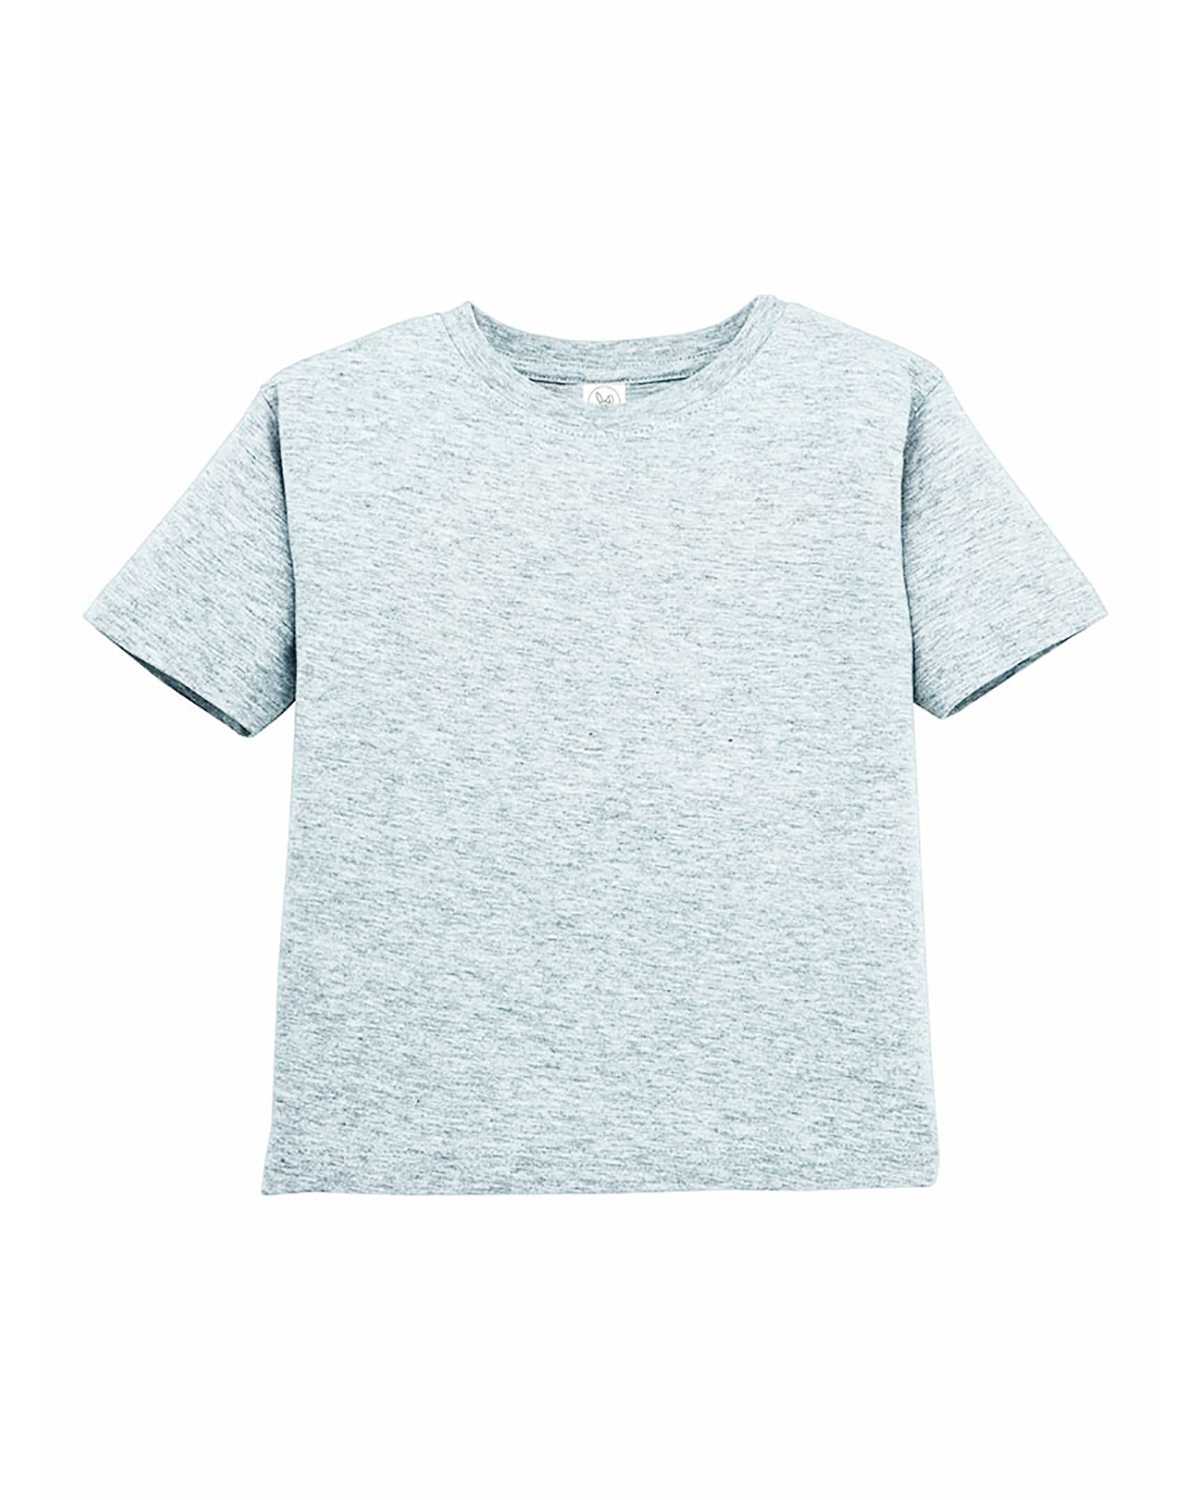 Rabbit Skins 3321 Toddler Fine Jersey T-Shirt | ApparelChoice.com